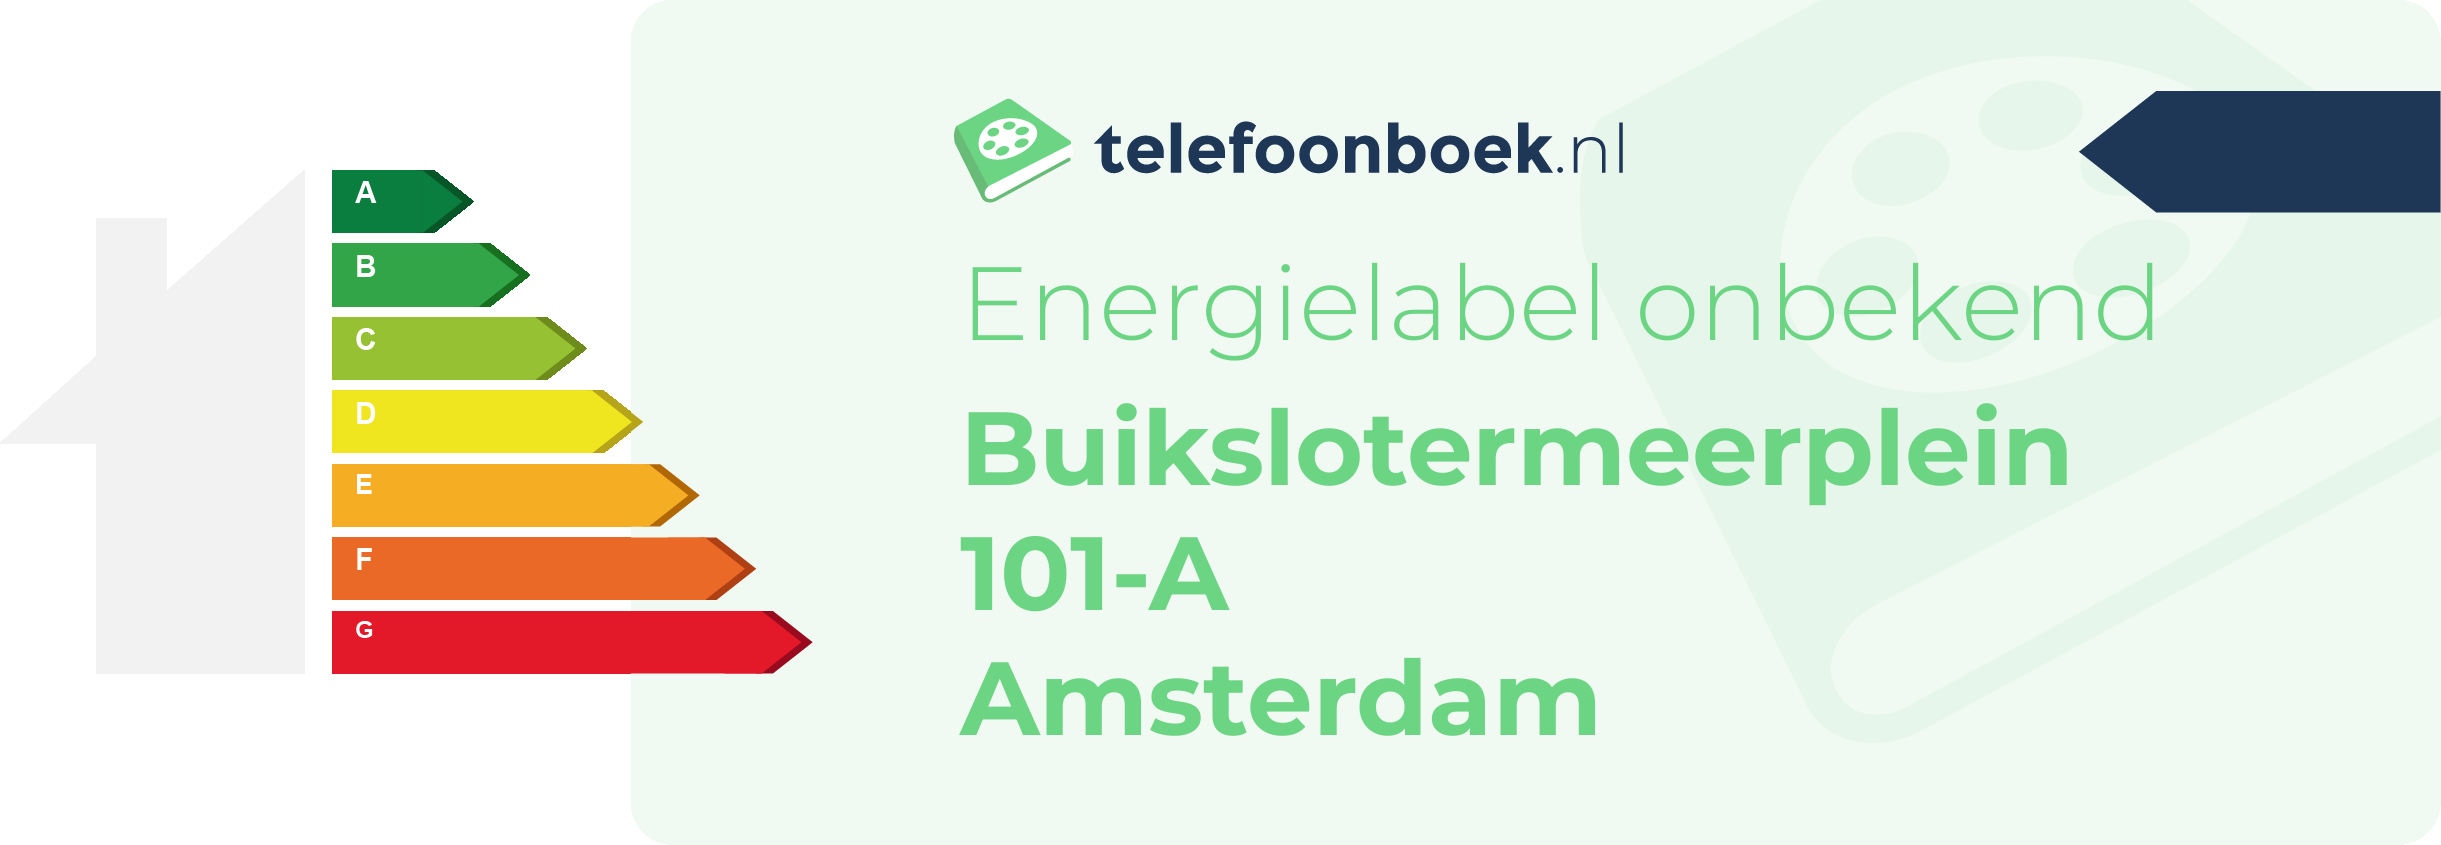 Energielabel Buikslotermeerplein 101-A Amsterdam